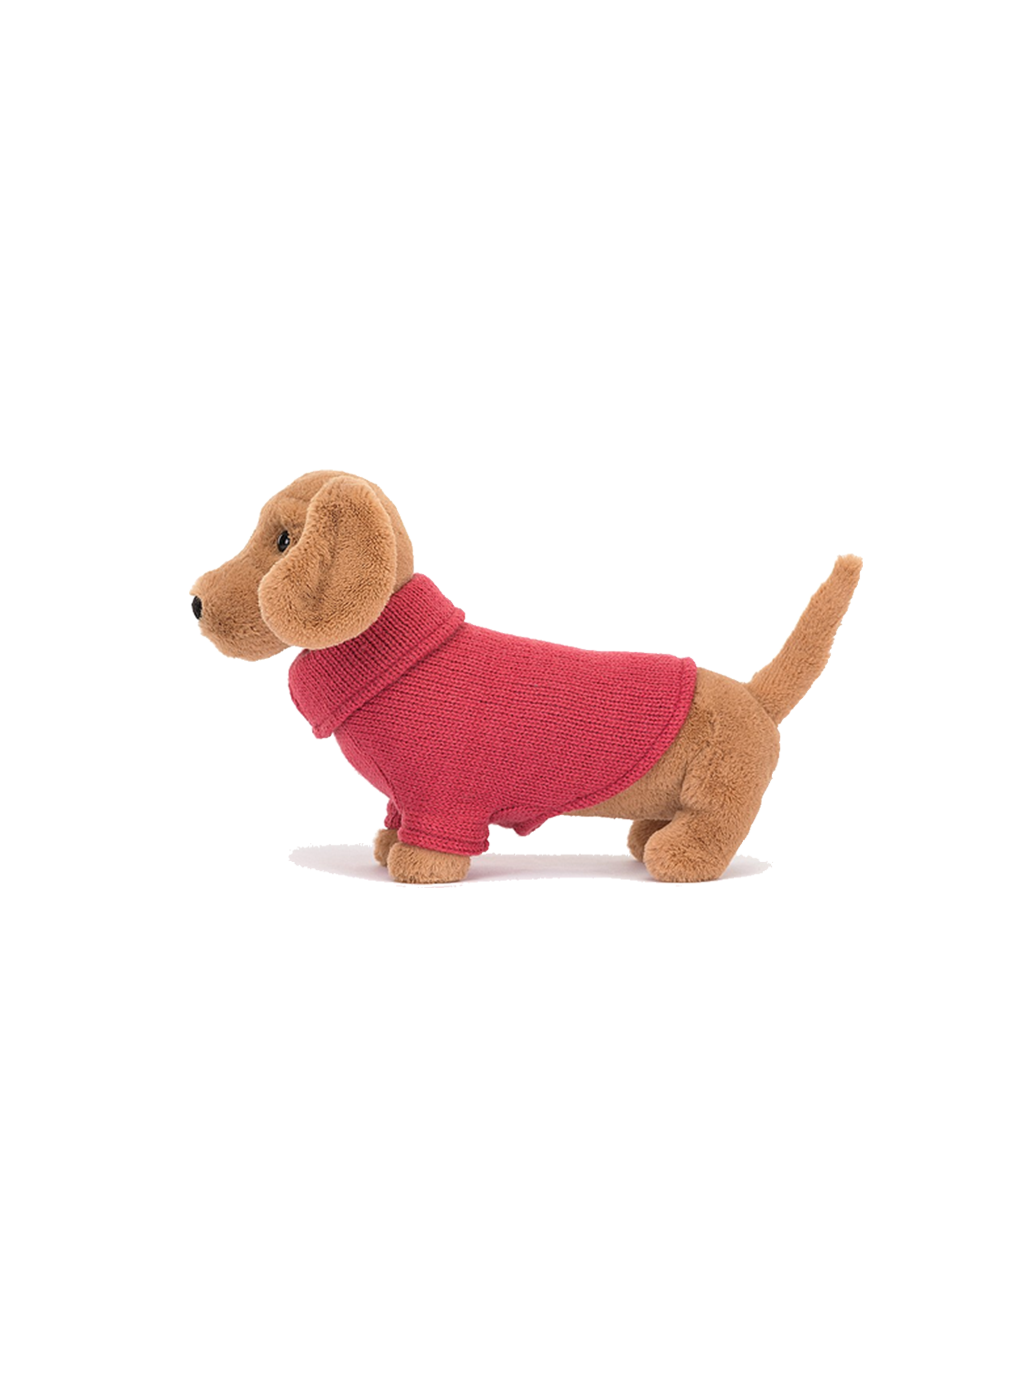 Cuddly dachshund in a sweater